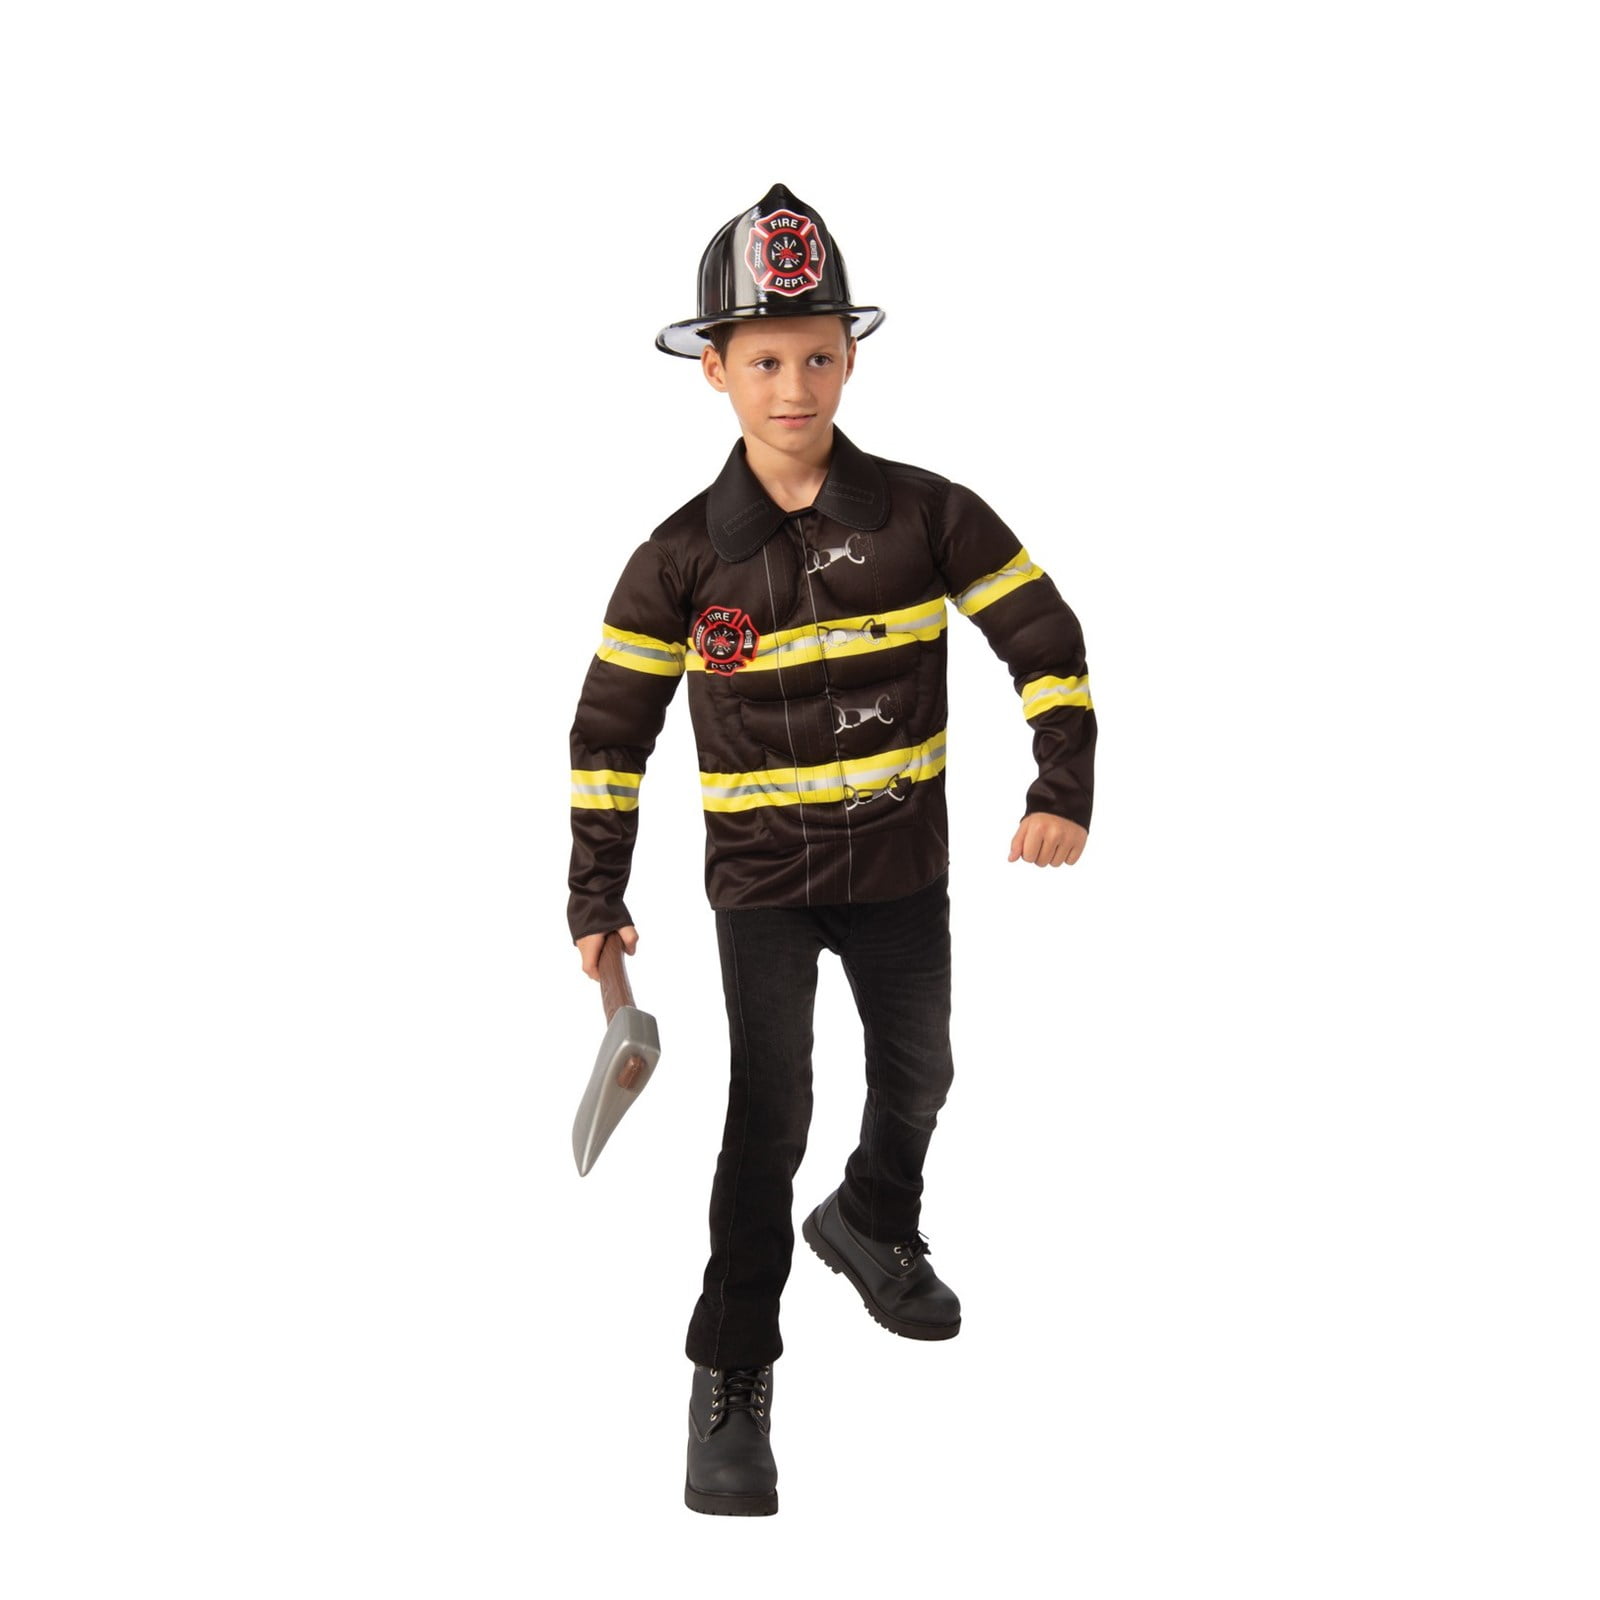 Official Rubies Unisex Small Fireman Sam Children's Costumes Fireman Sam Fireman